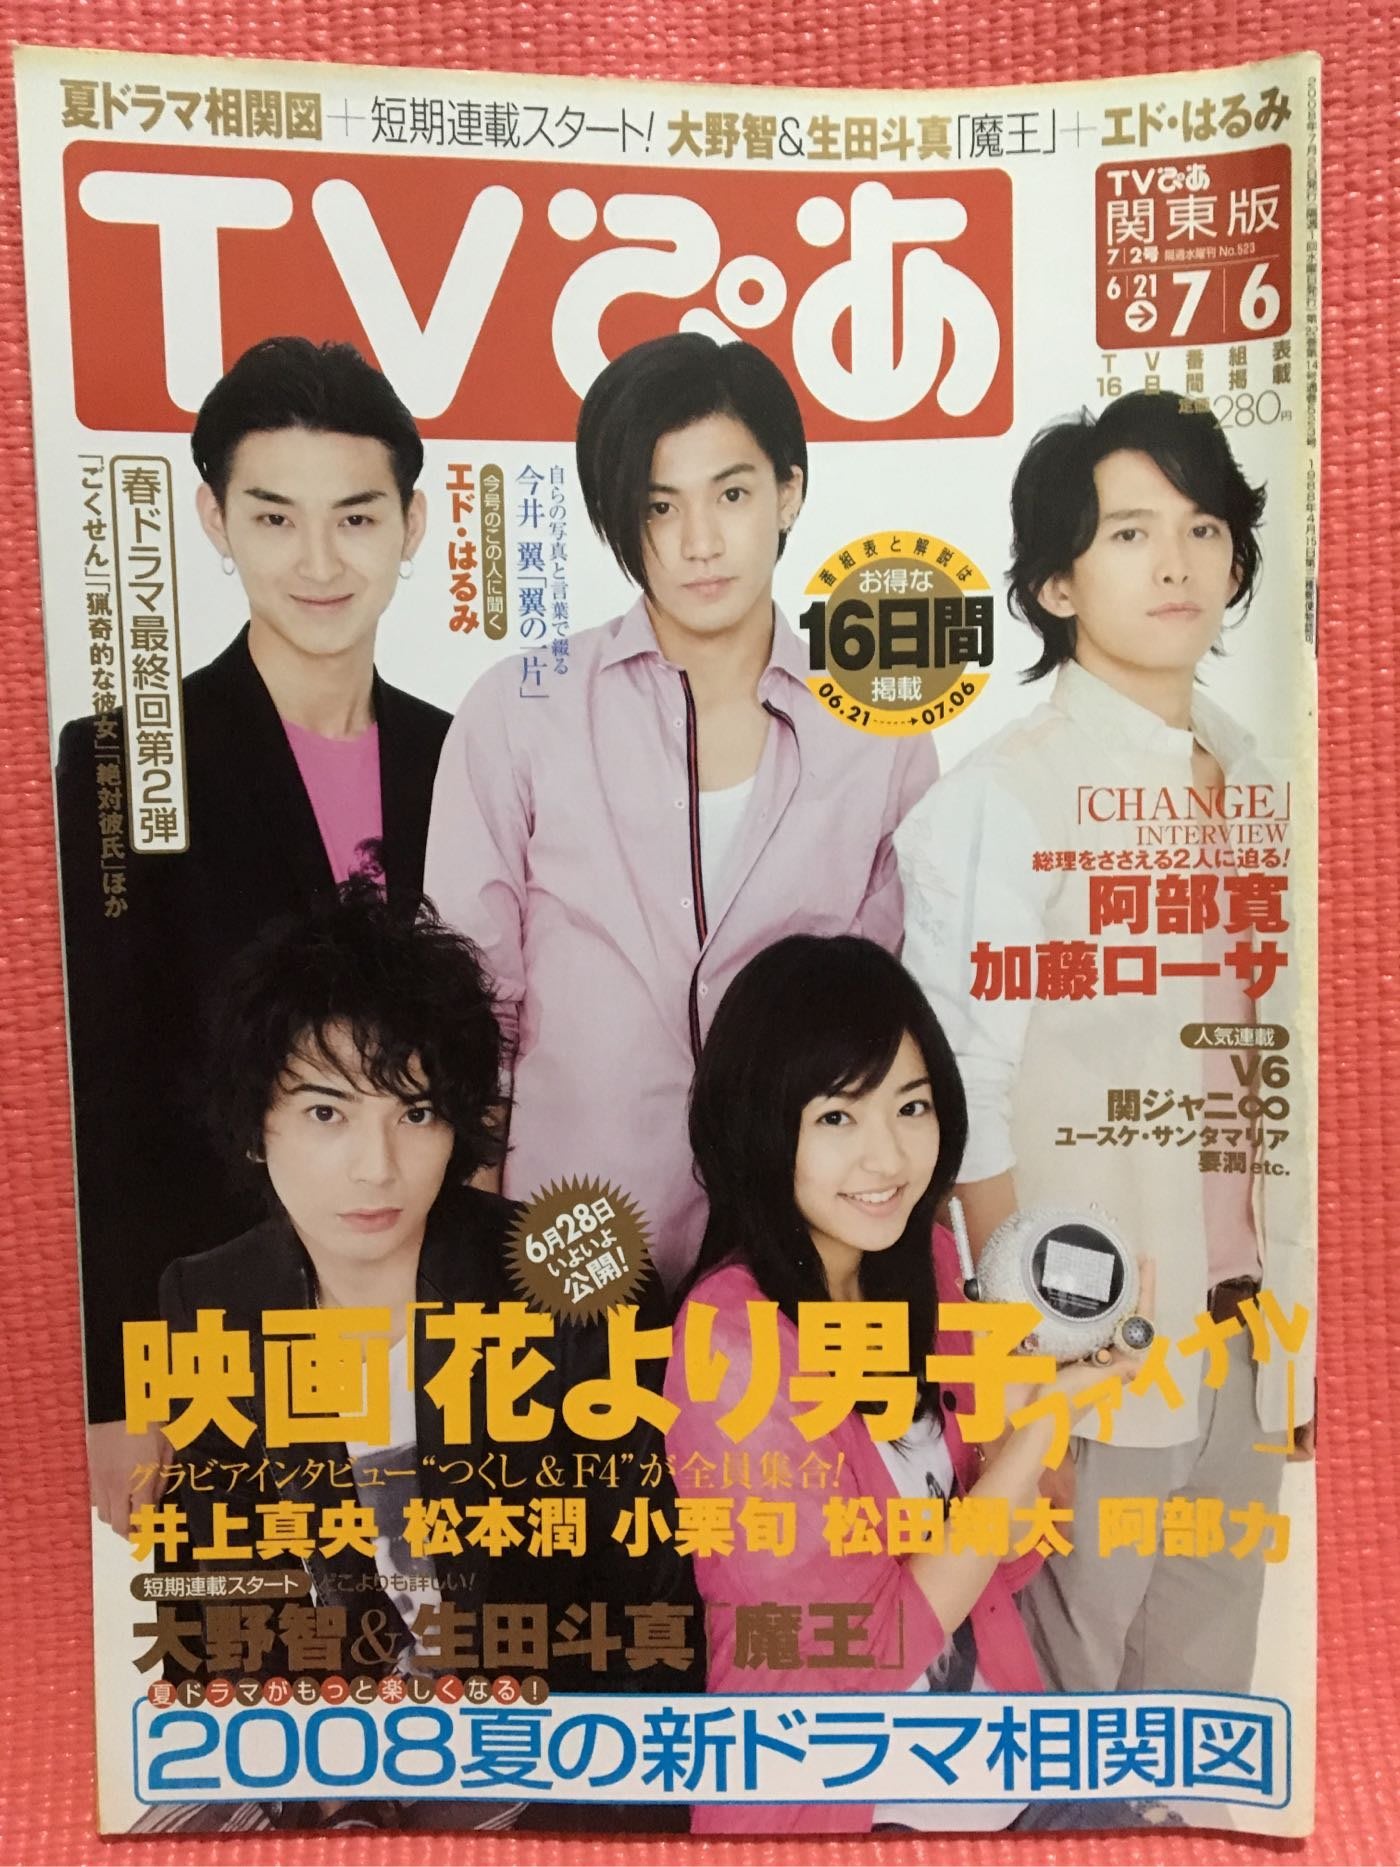 嵐arashi 雜誌 Tv 流星花園 大野智 櫻井翔 相葉雅紀 二宮和也 松本潤 Yahoo奇摩拍賣